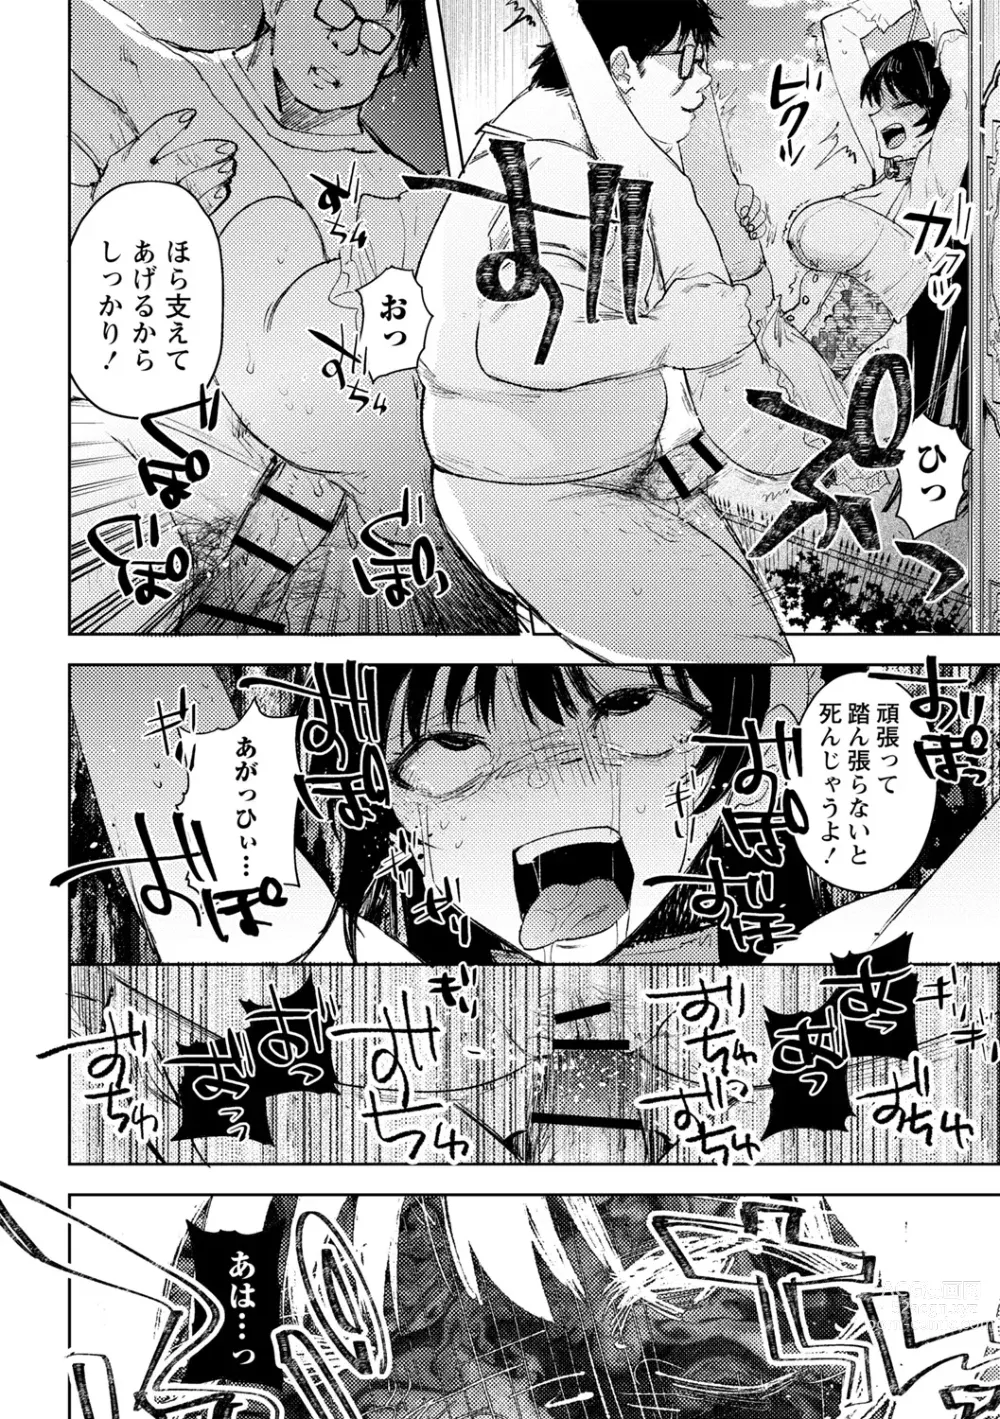 Page 24 of manga Yuuhei  KodoOji no Tou